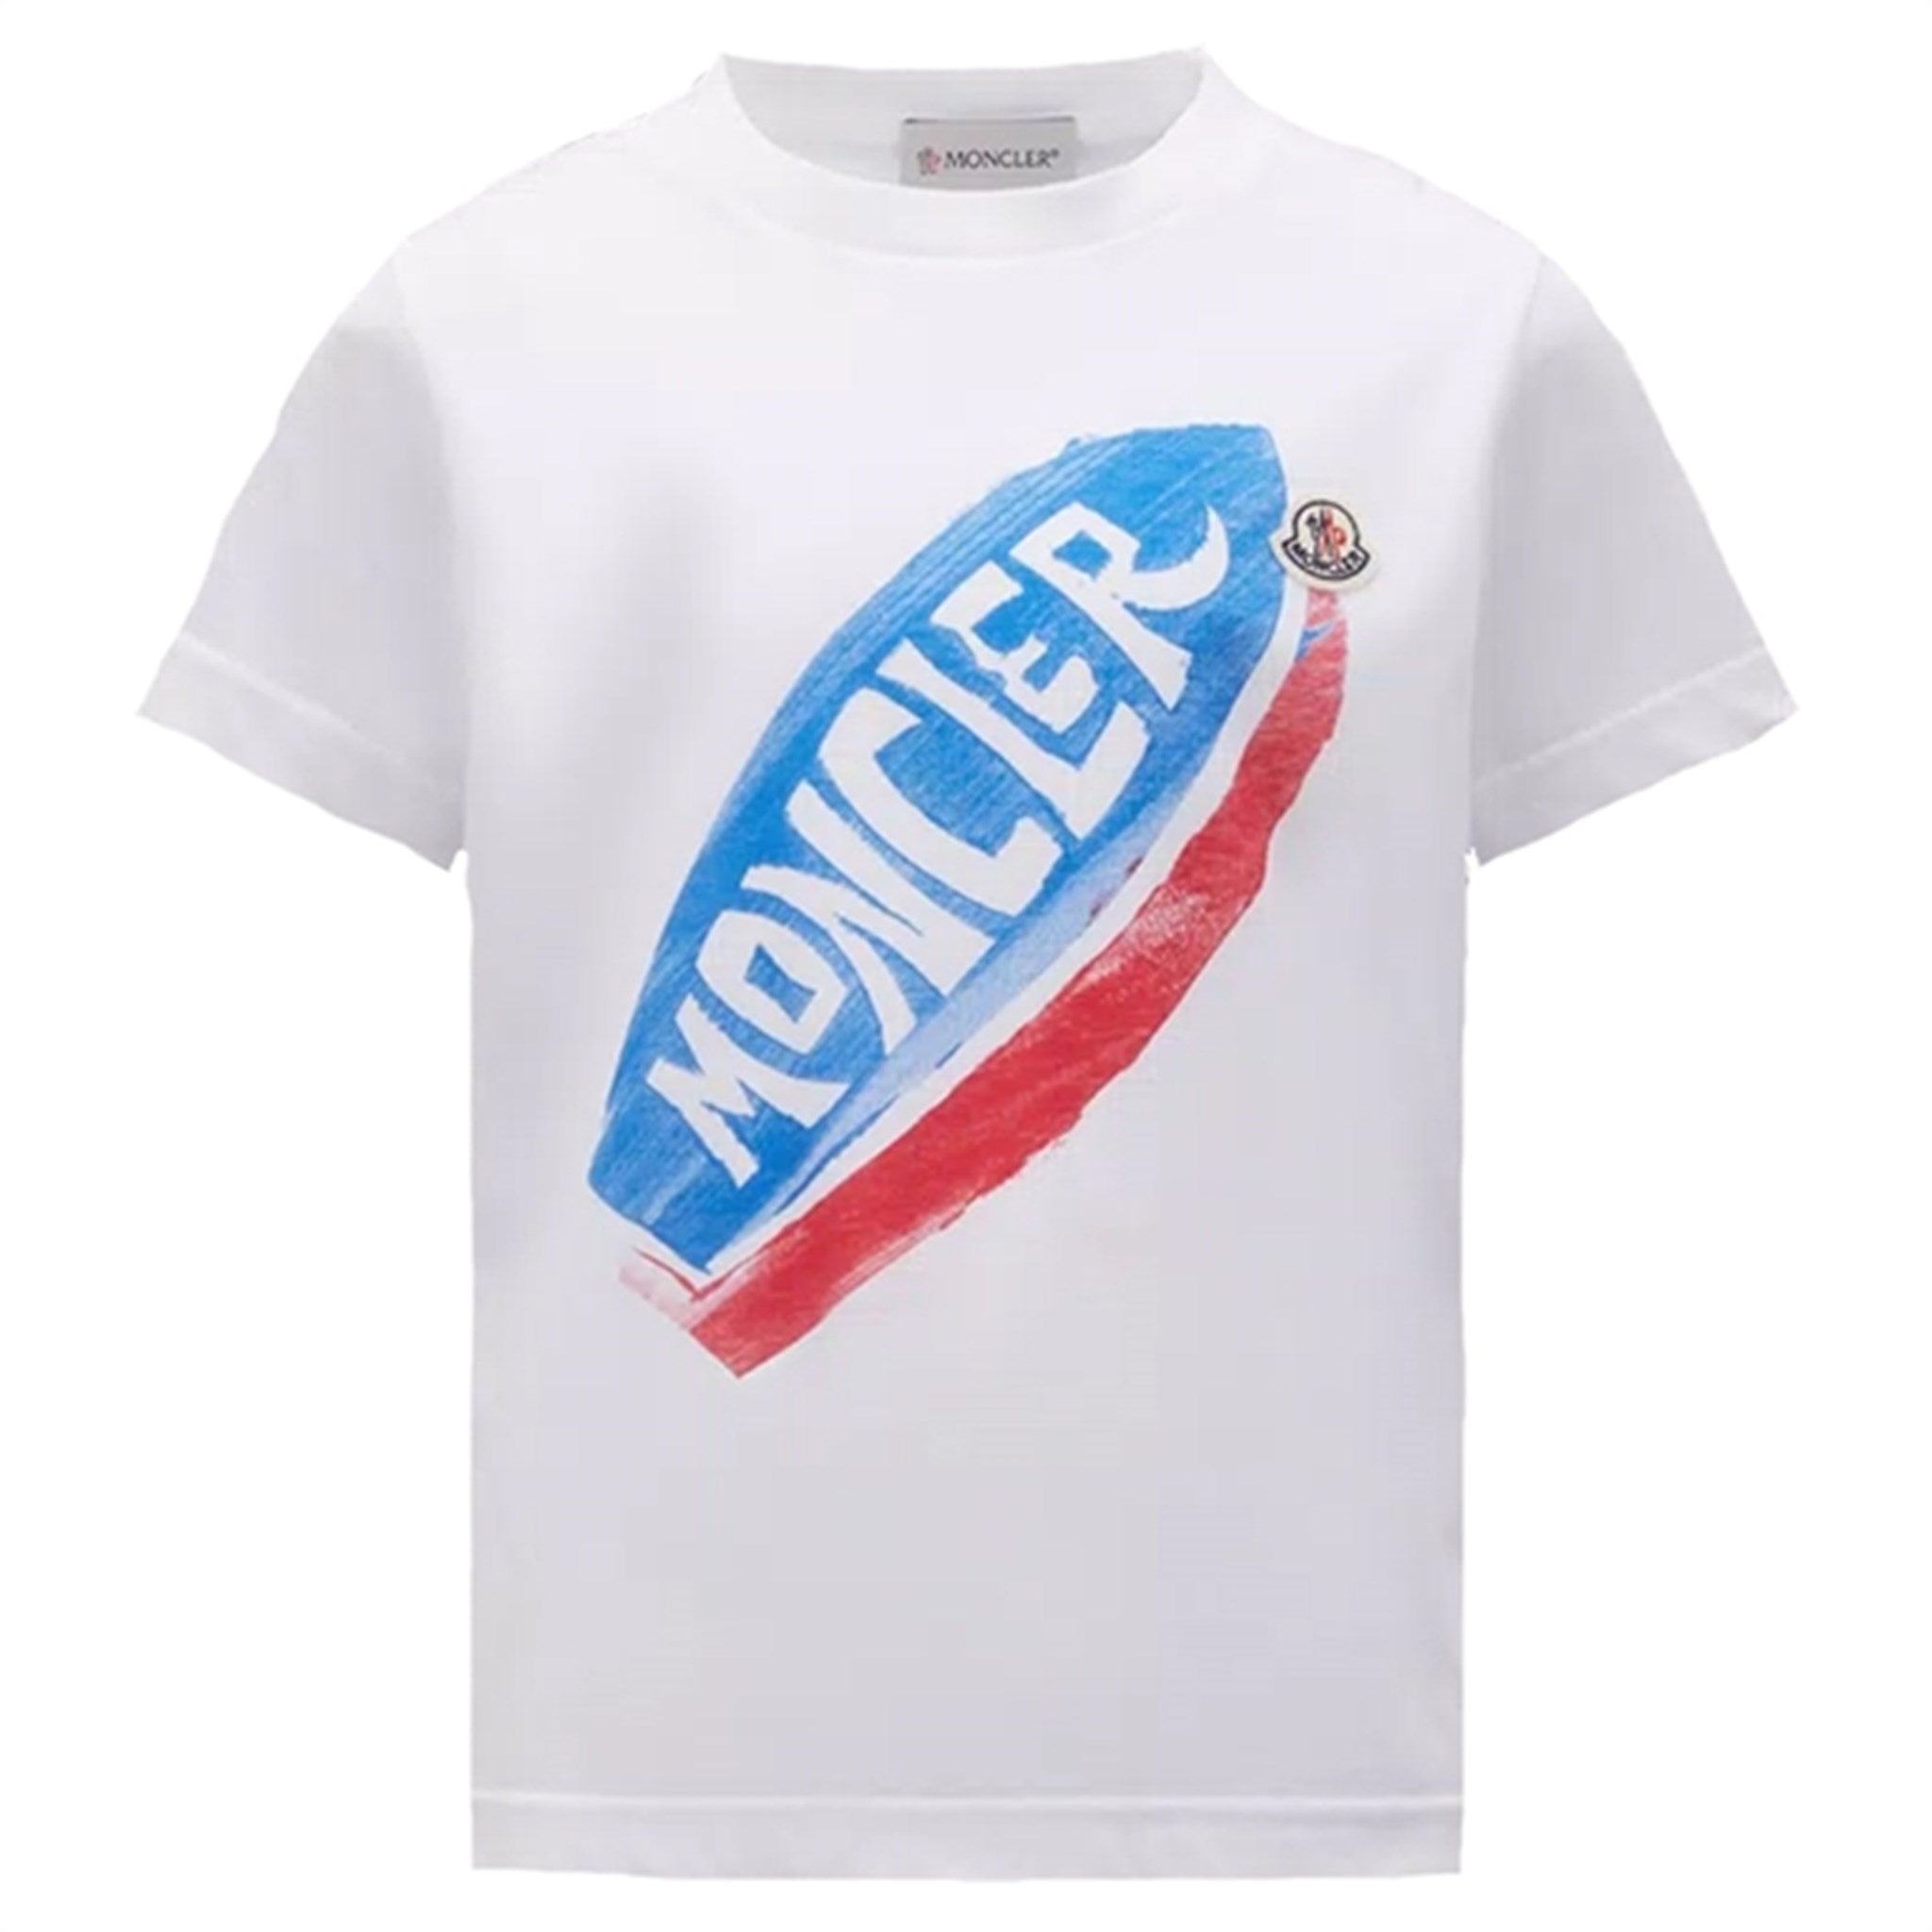 Moncler T-Shirt White & Light Blue